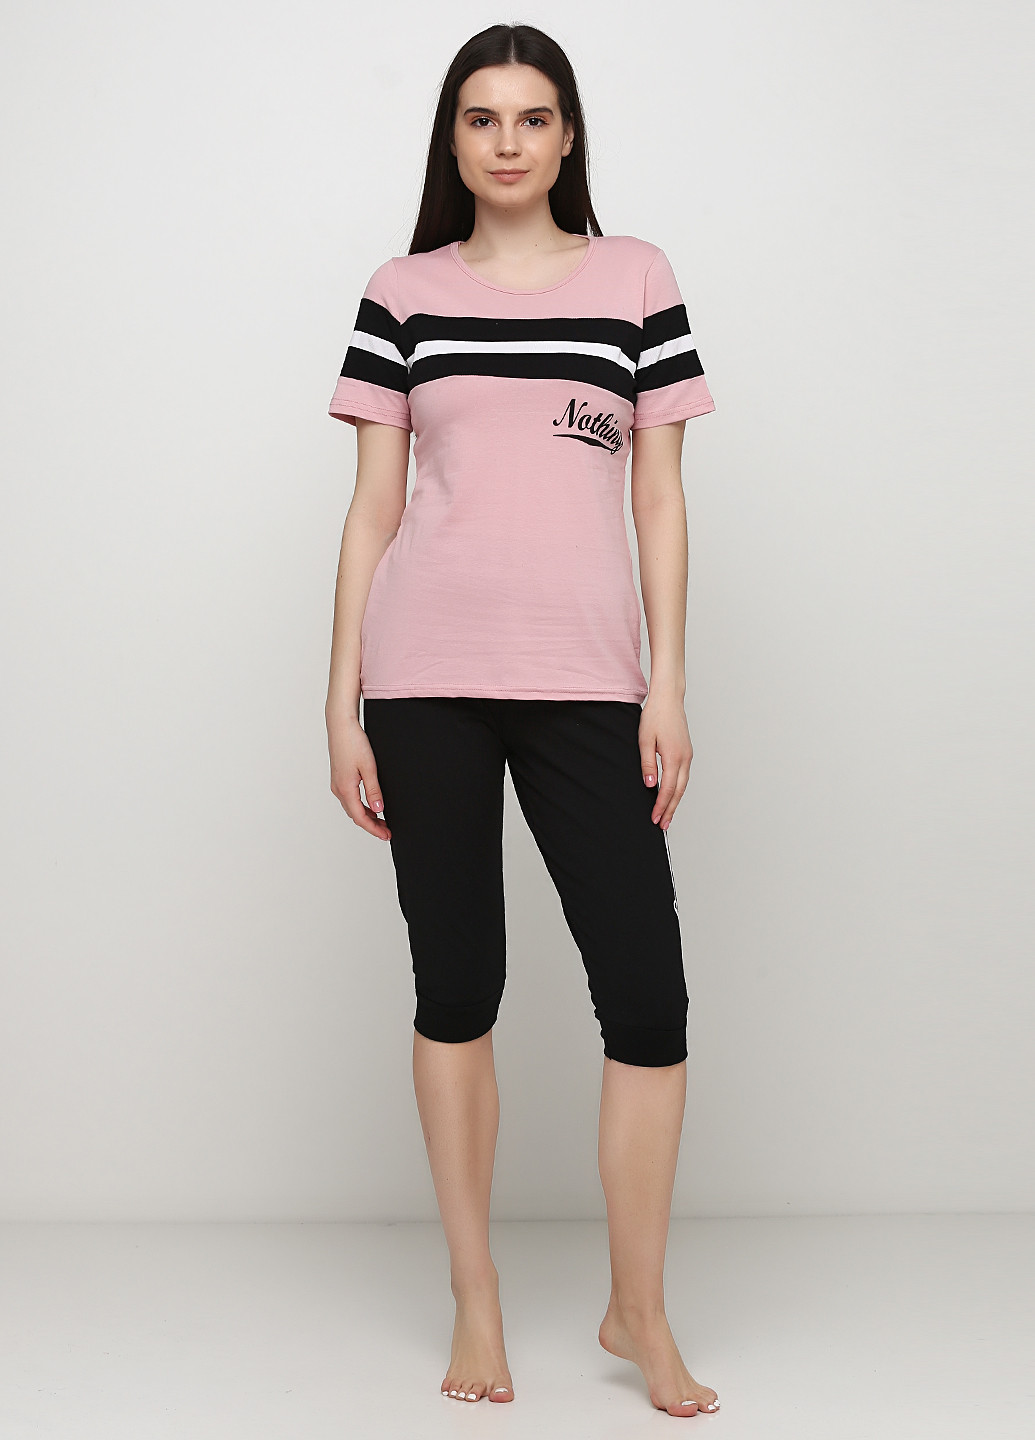 Комбинированная всесезон пижама (футболка, бриджи) футболка + бриджи Sexen